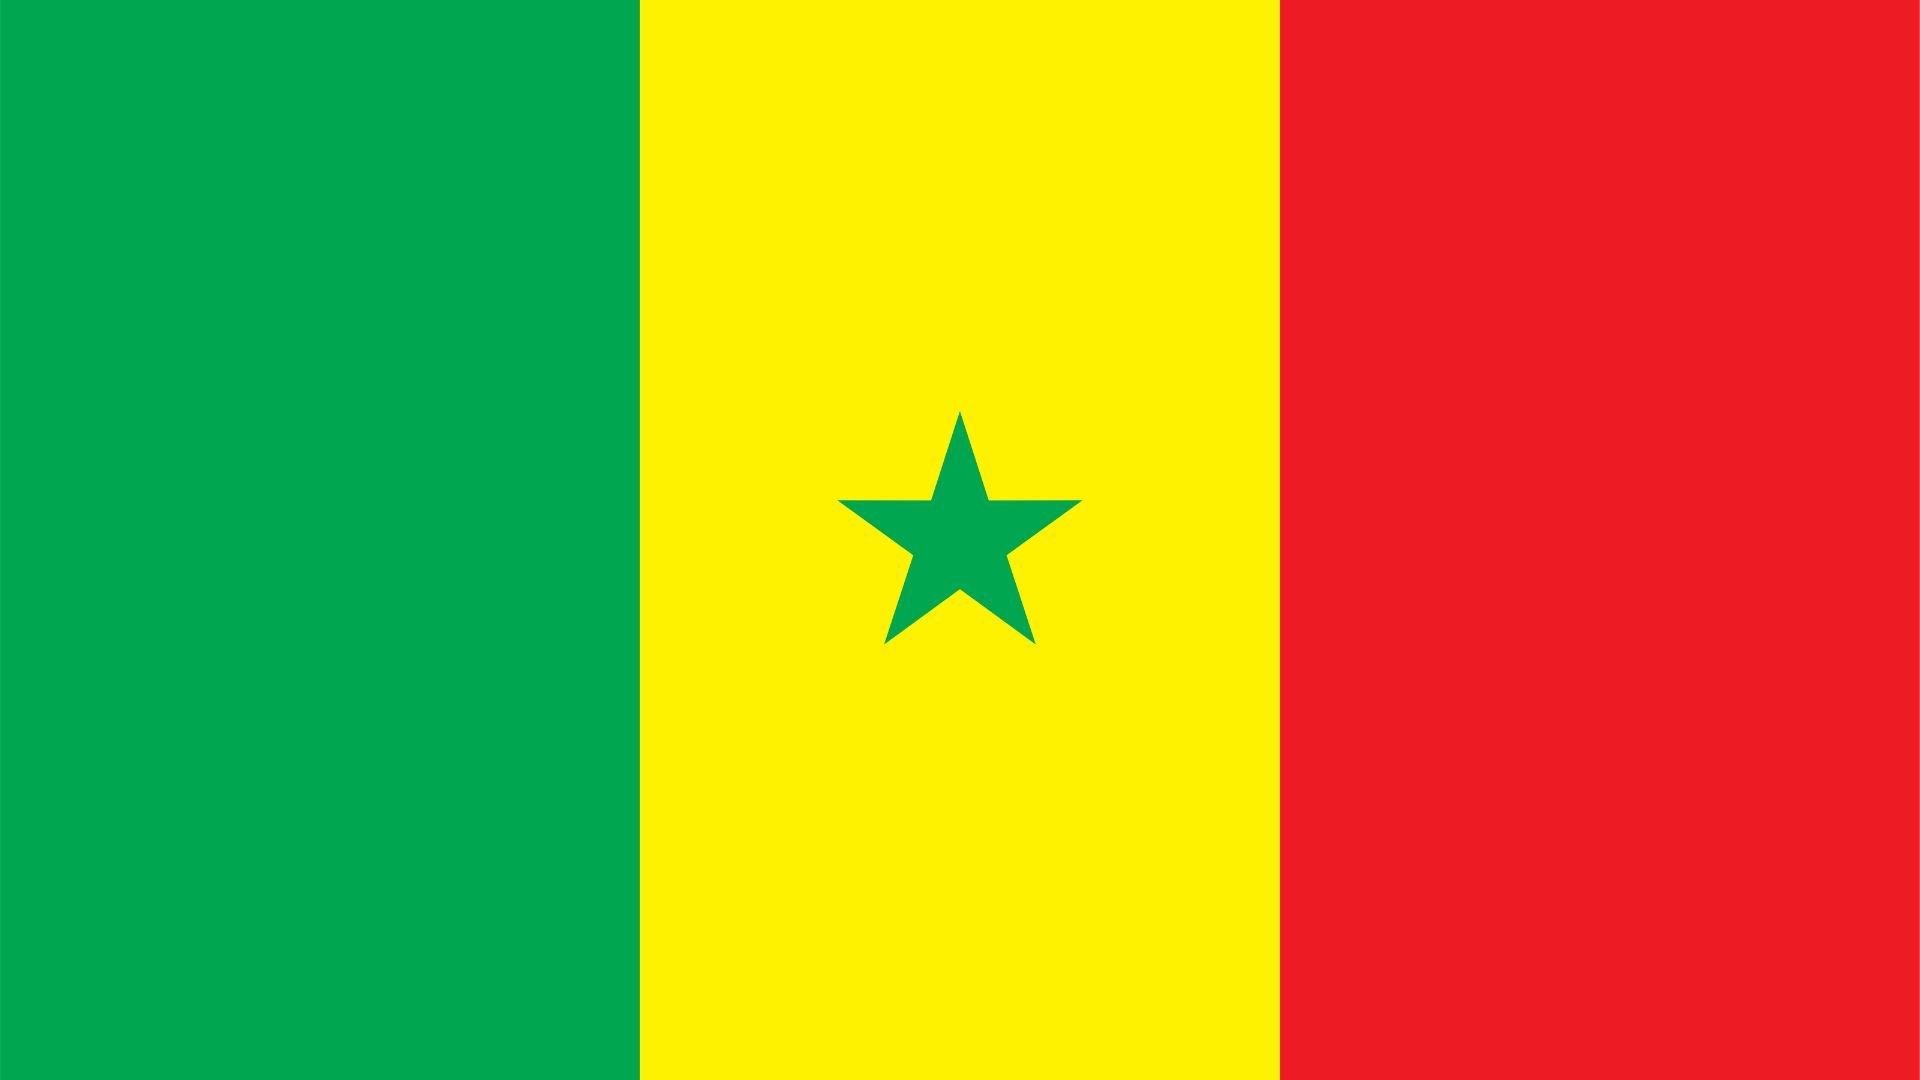 A bandeira do Senegal é composta por três cores: verde, amarela e vermelha, distribuídas verticalmente. Ela possui uma estrela verde de cinco pontas no centro.